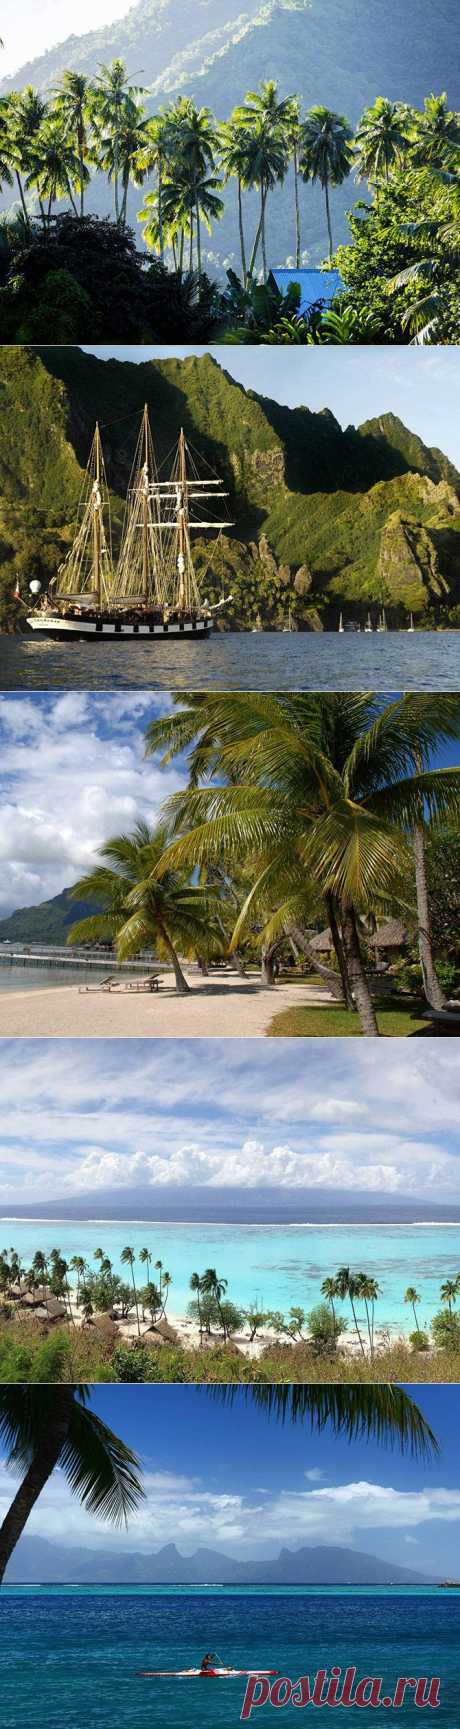 Рай на Земле - это Таити / Туристический спутник